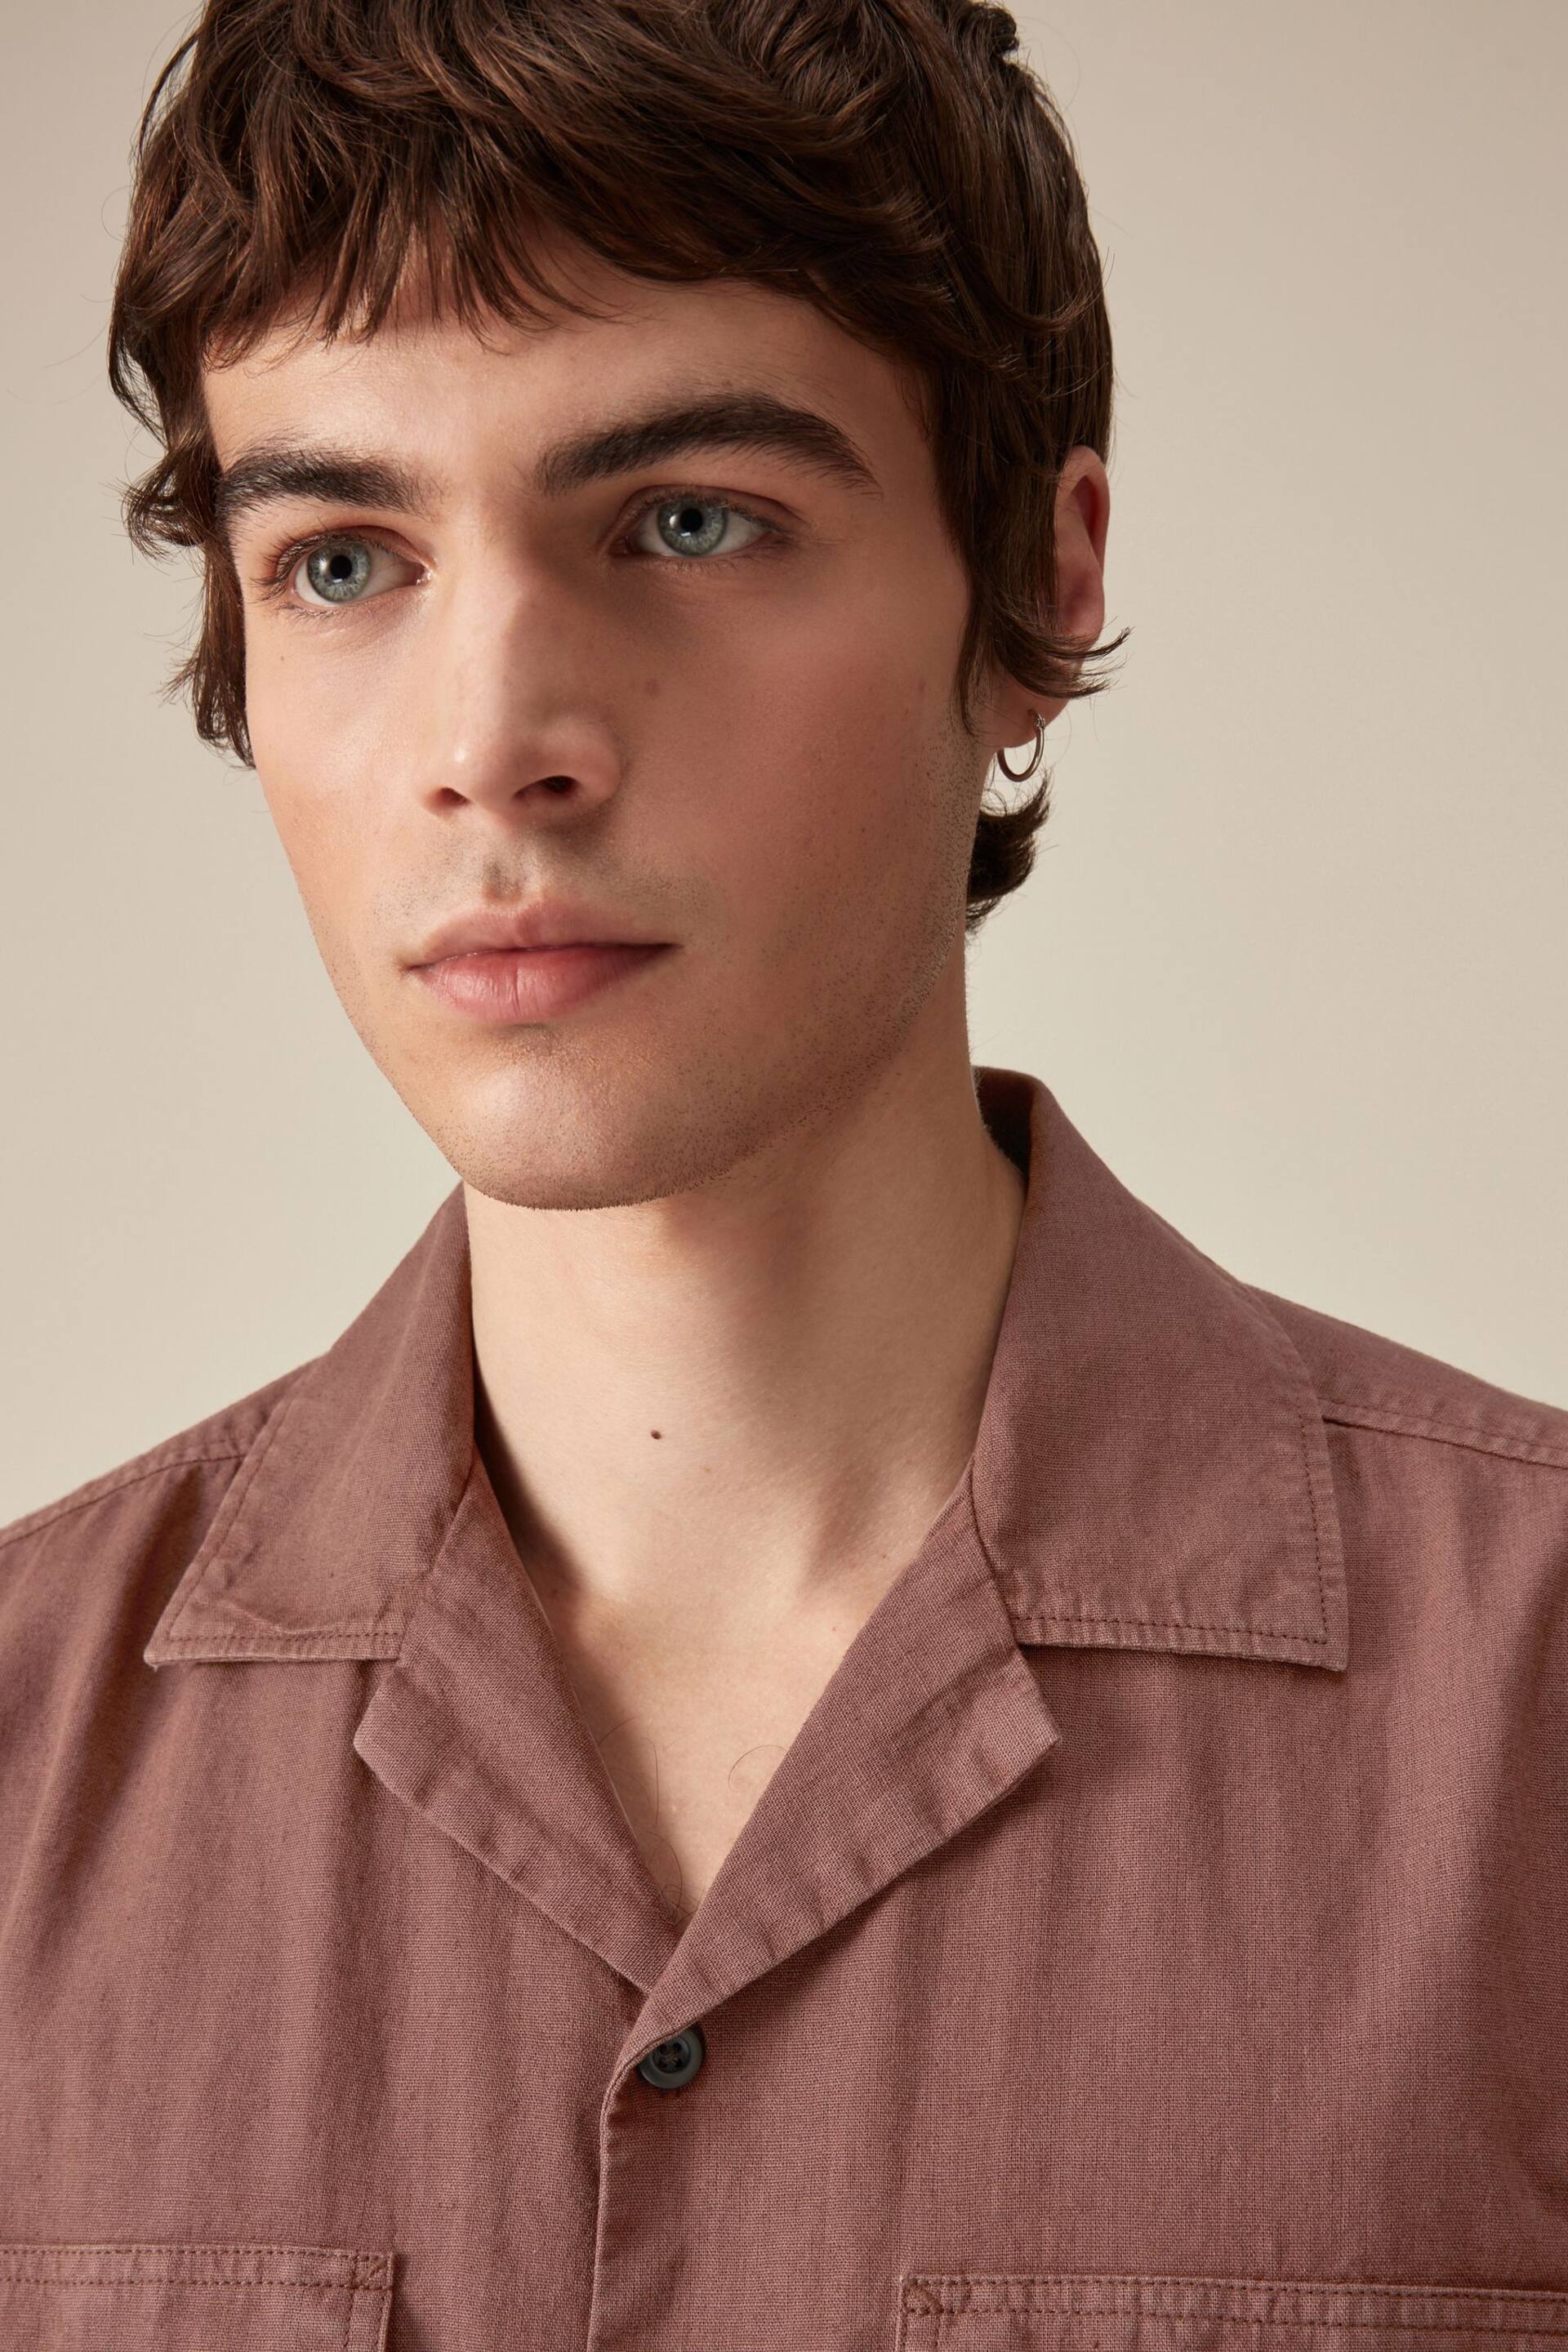 Rust Brown Linen Blend Short Sleeve Shirt with Cuban Collar - Image 4 of 9